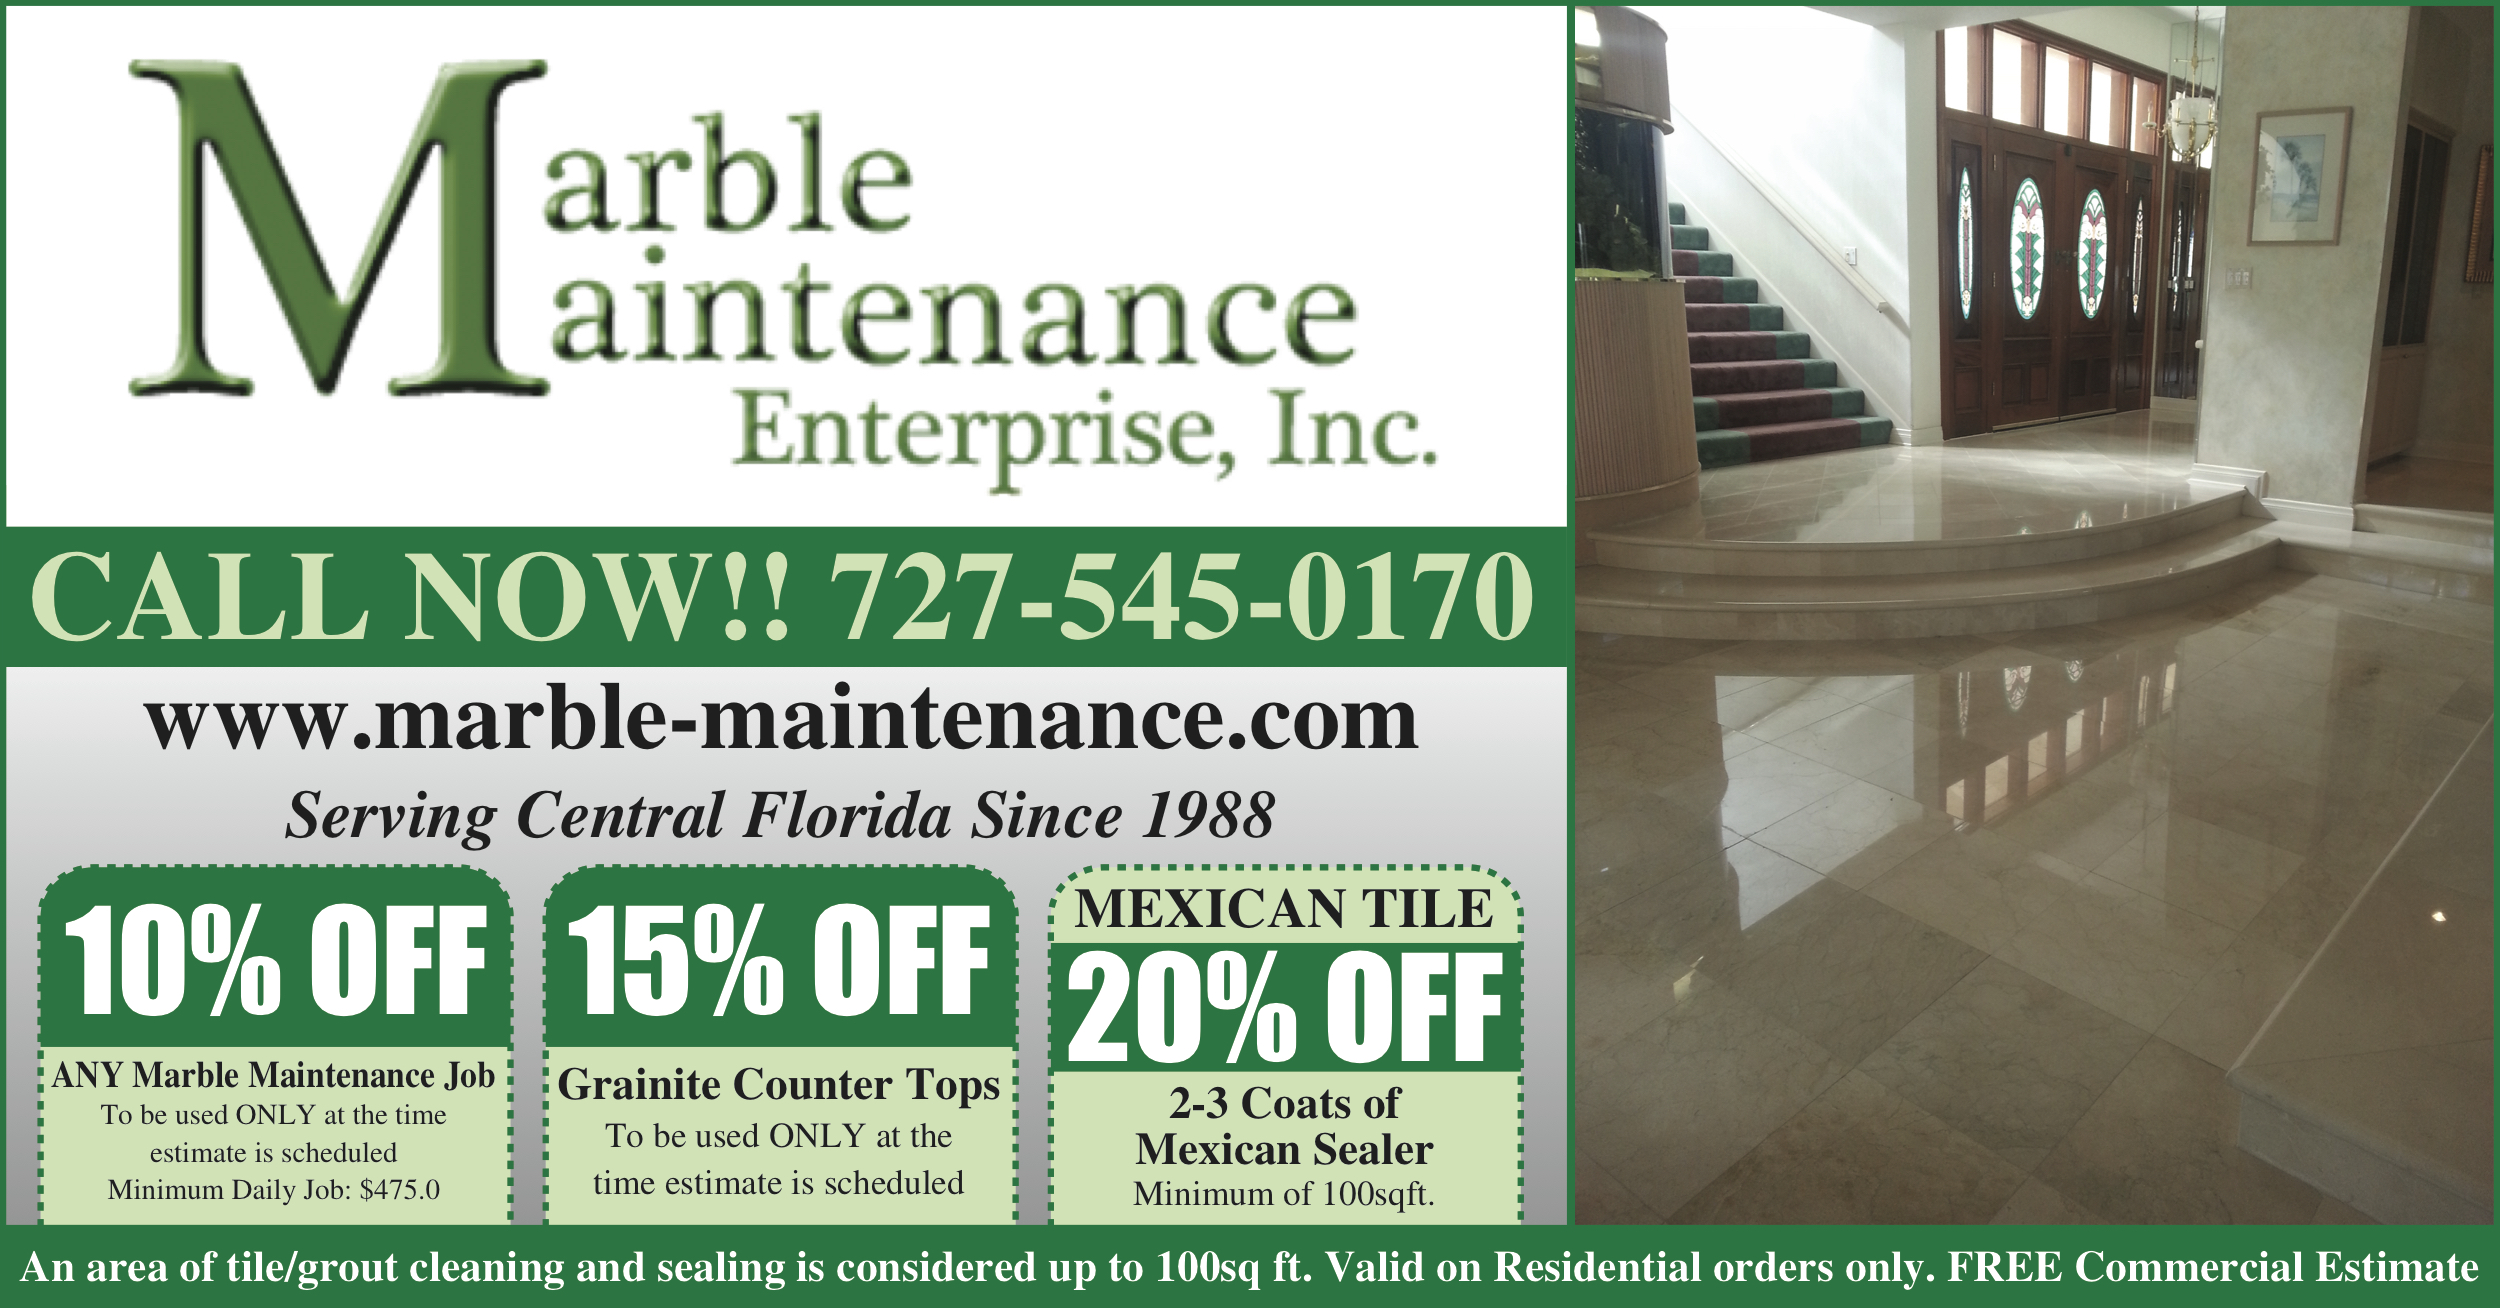 Marble_Maintenance_Enterprise2